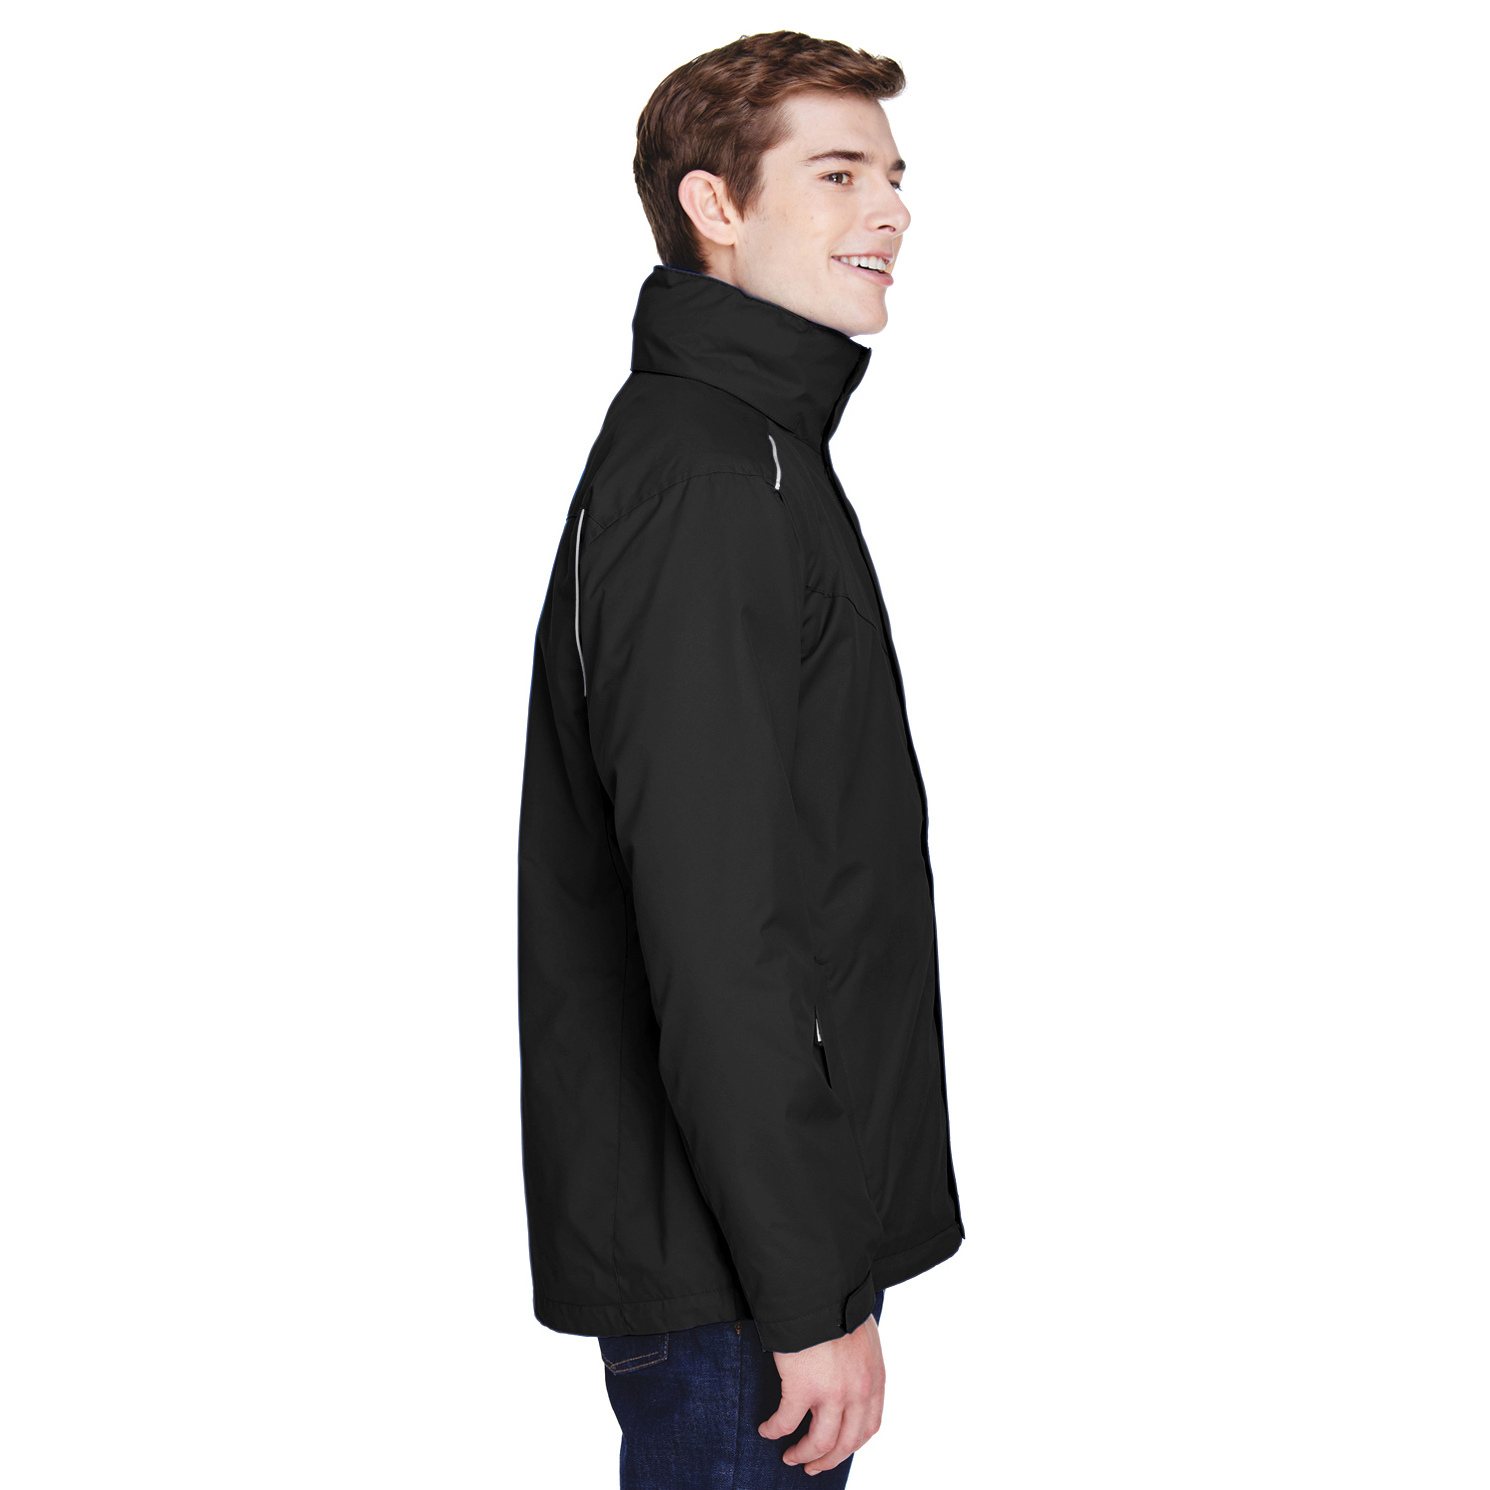 Core 365 88205 Men's Region 3-in-1 Jacket with Fleece Liner - Black ...